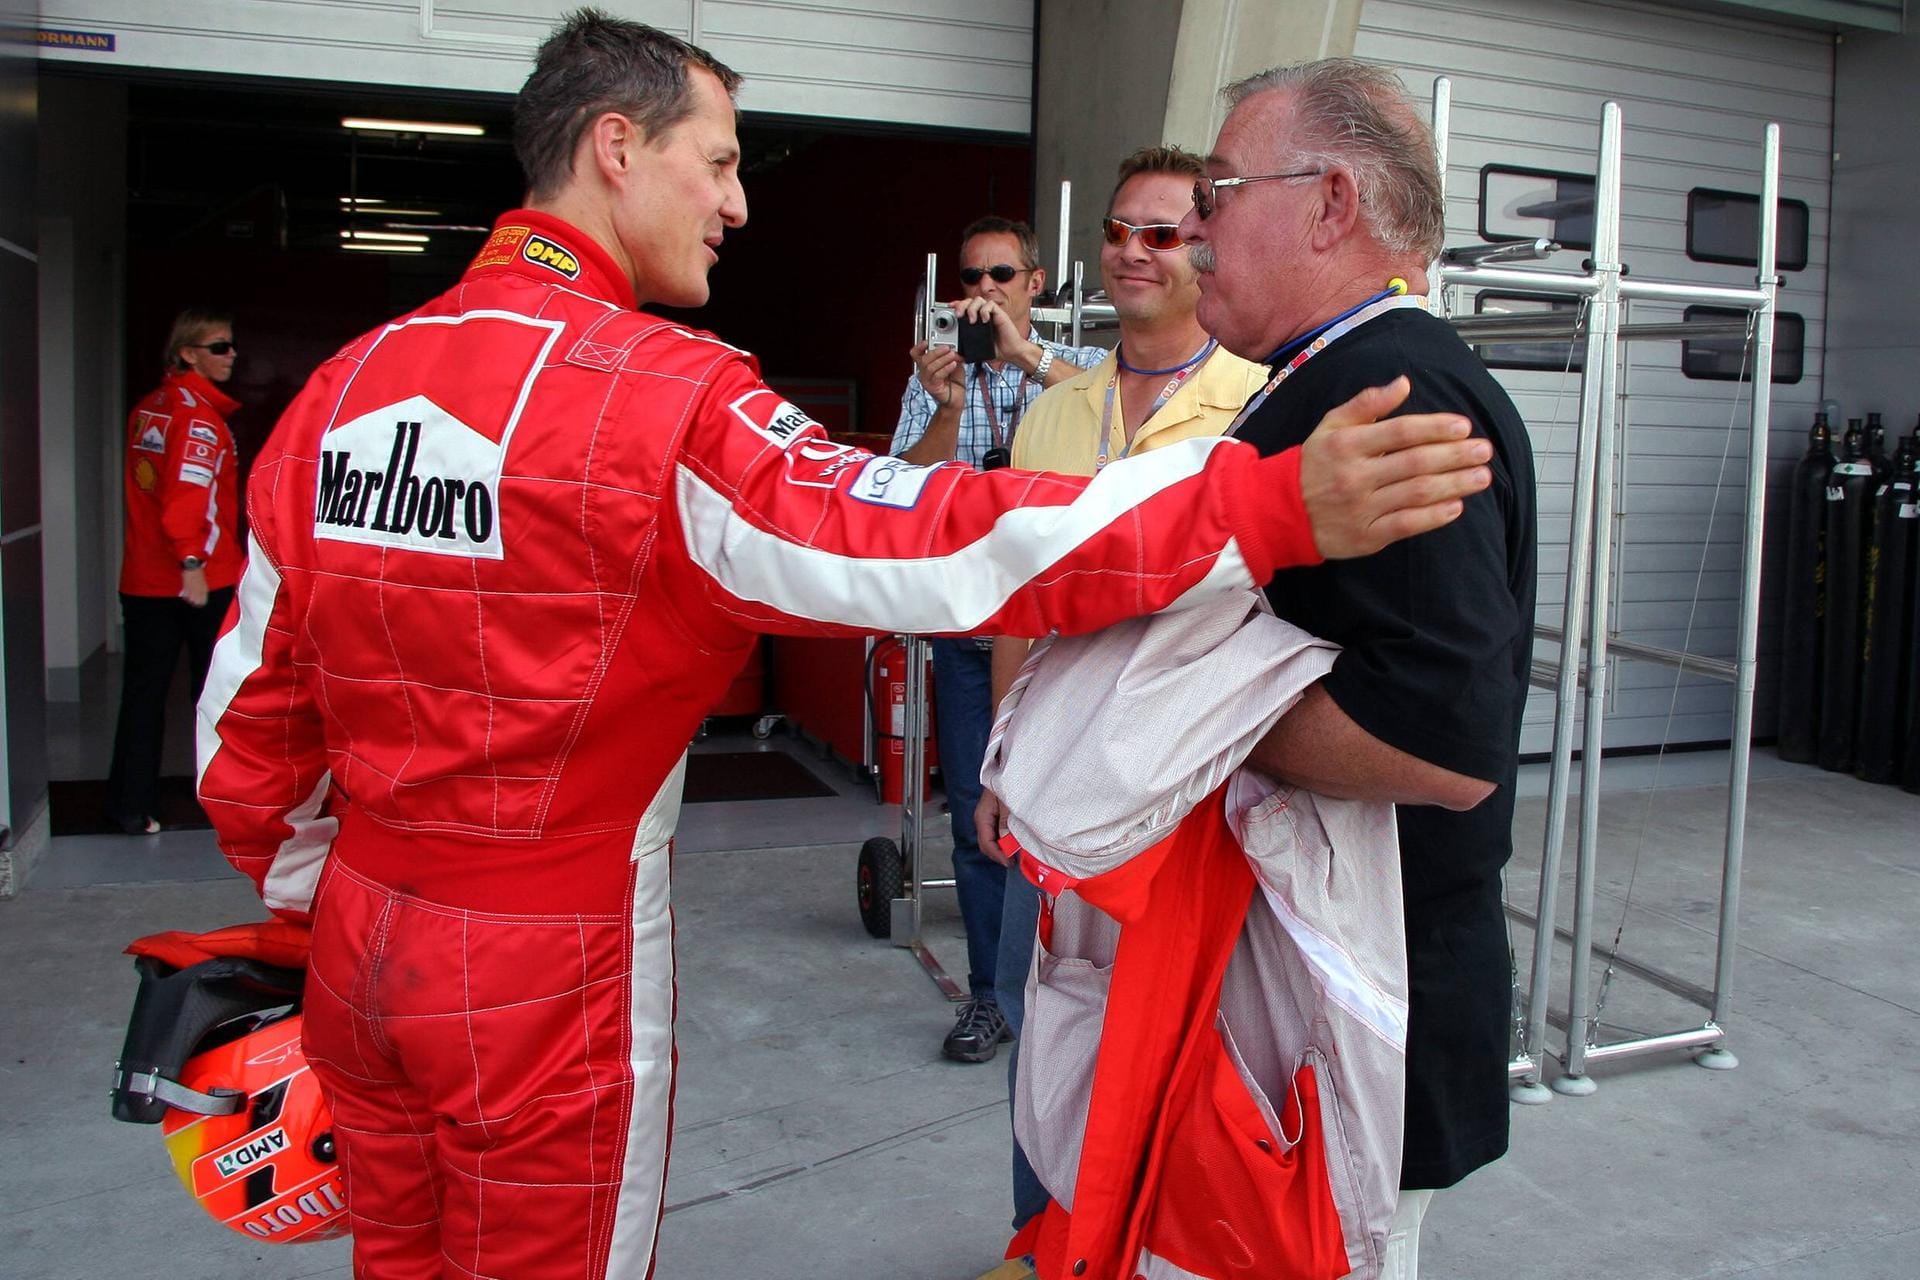 Michael Schumacher und Jürgen Dilk (r.): Der Rennfahrer im Jahr 2005 mit einem seiner ersten Sponsoren. Dilk unterstützte Schumi, als dieser im Kartsport aktiv war. So gewann Schumacher im Jahr 1984 und 1985 die deutsche Juniorenmeisterschaft. Auch während seiner späteren Karriere im Motorsport nahm Schumacher immer wieder an Kartrennen teil.